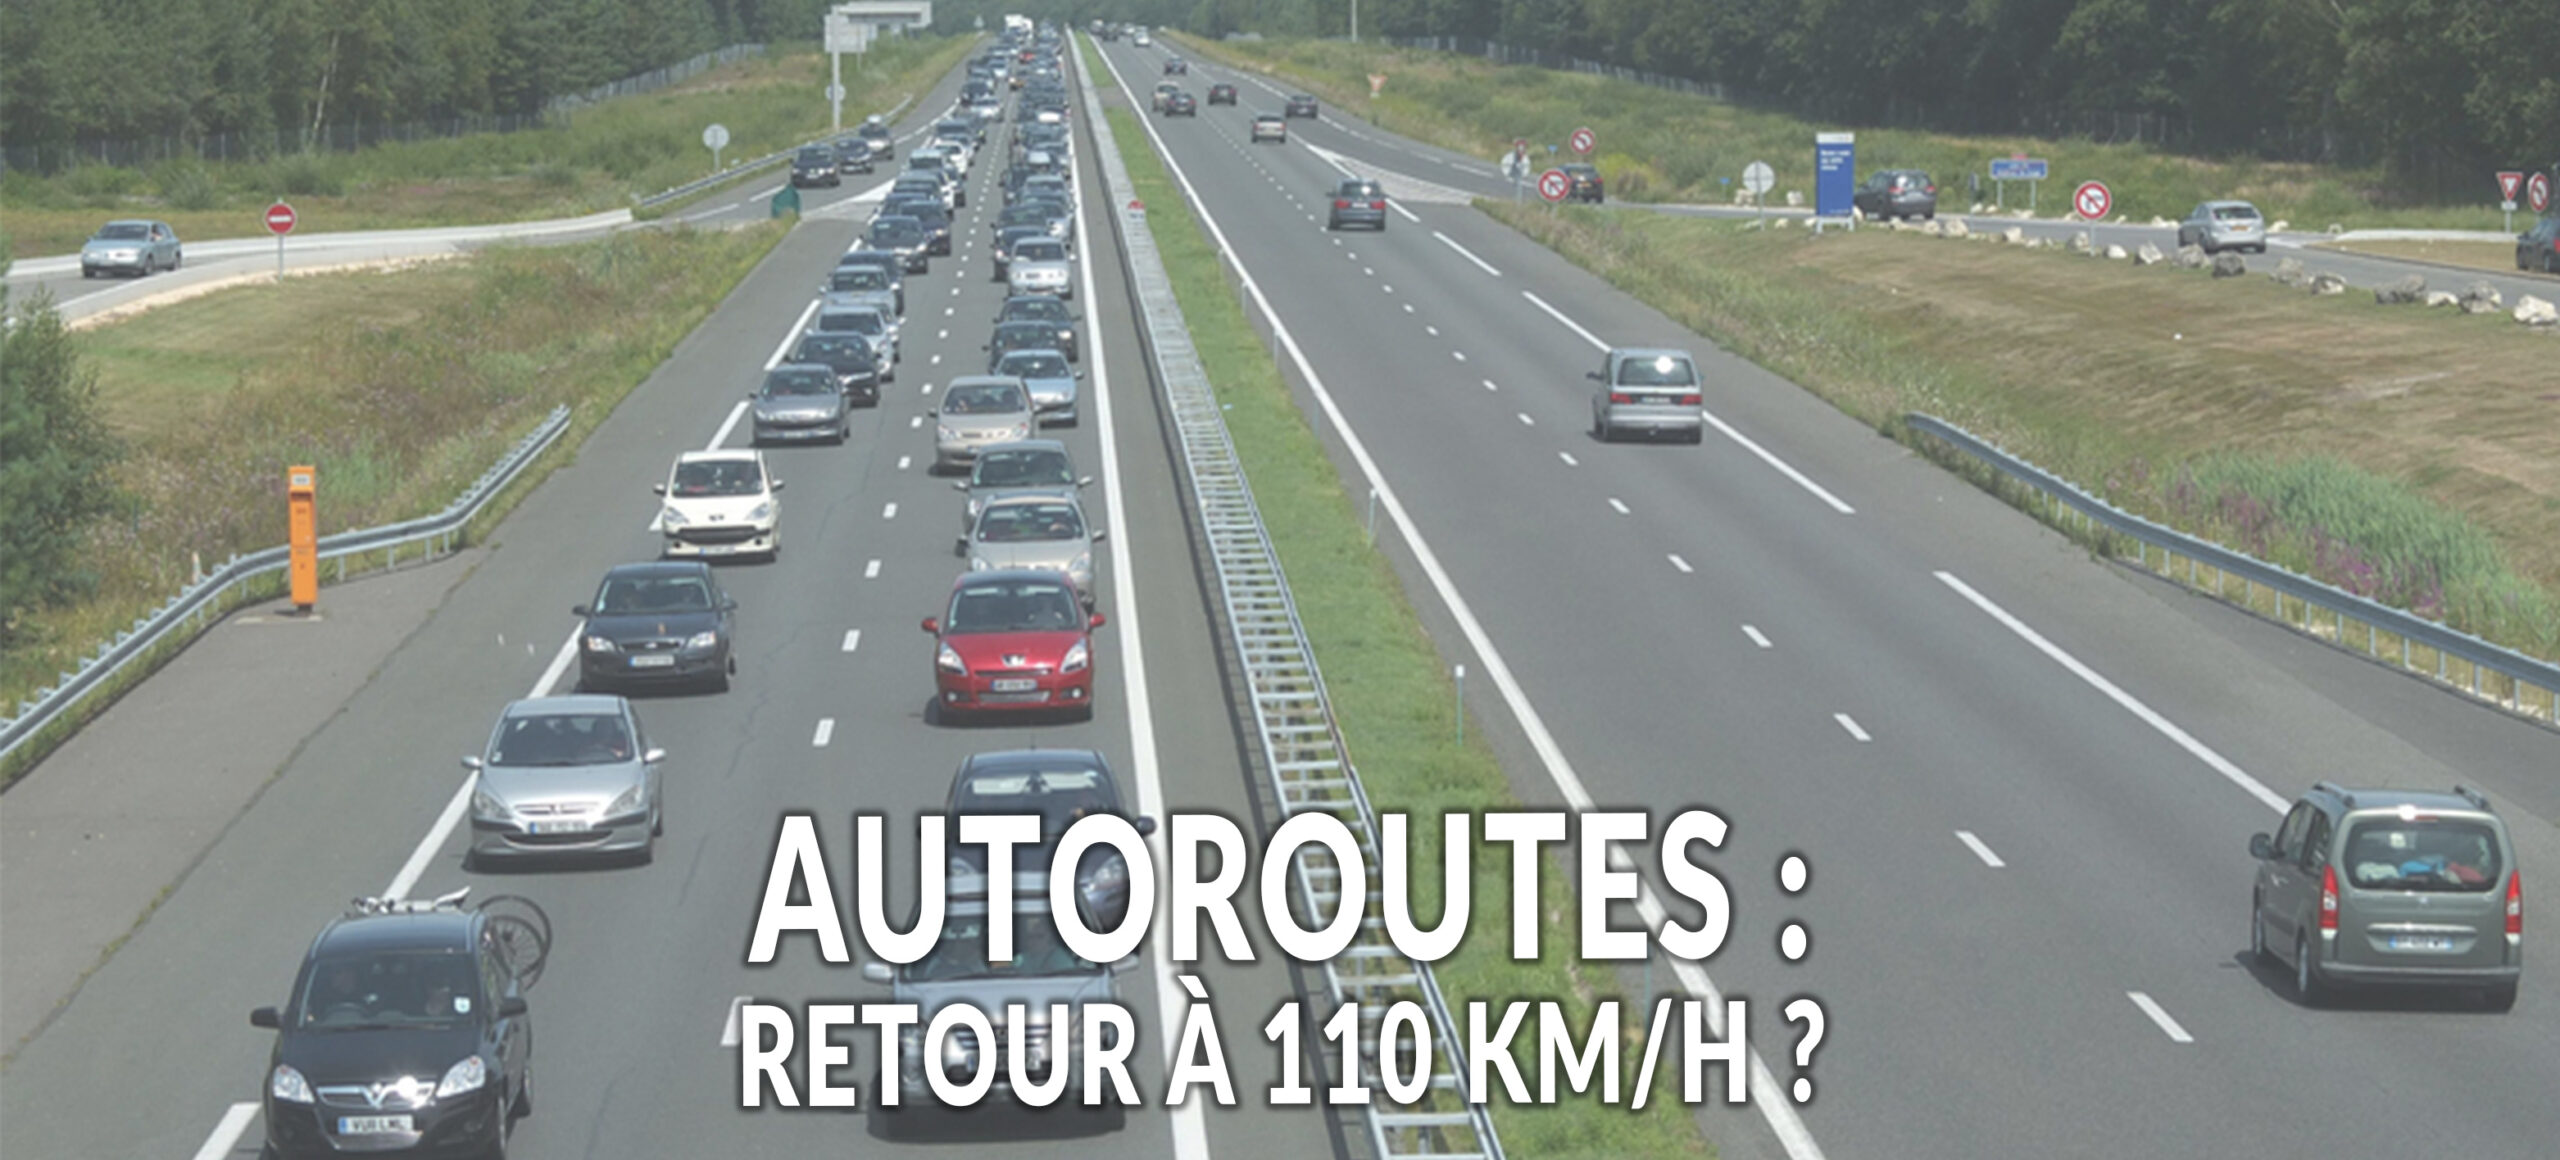 Automobile : la Convention Citoyenne vote le retour à 110 km/h sur autoroute